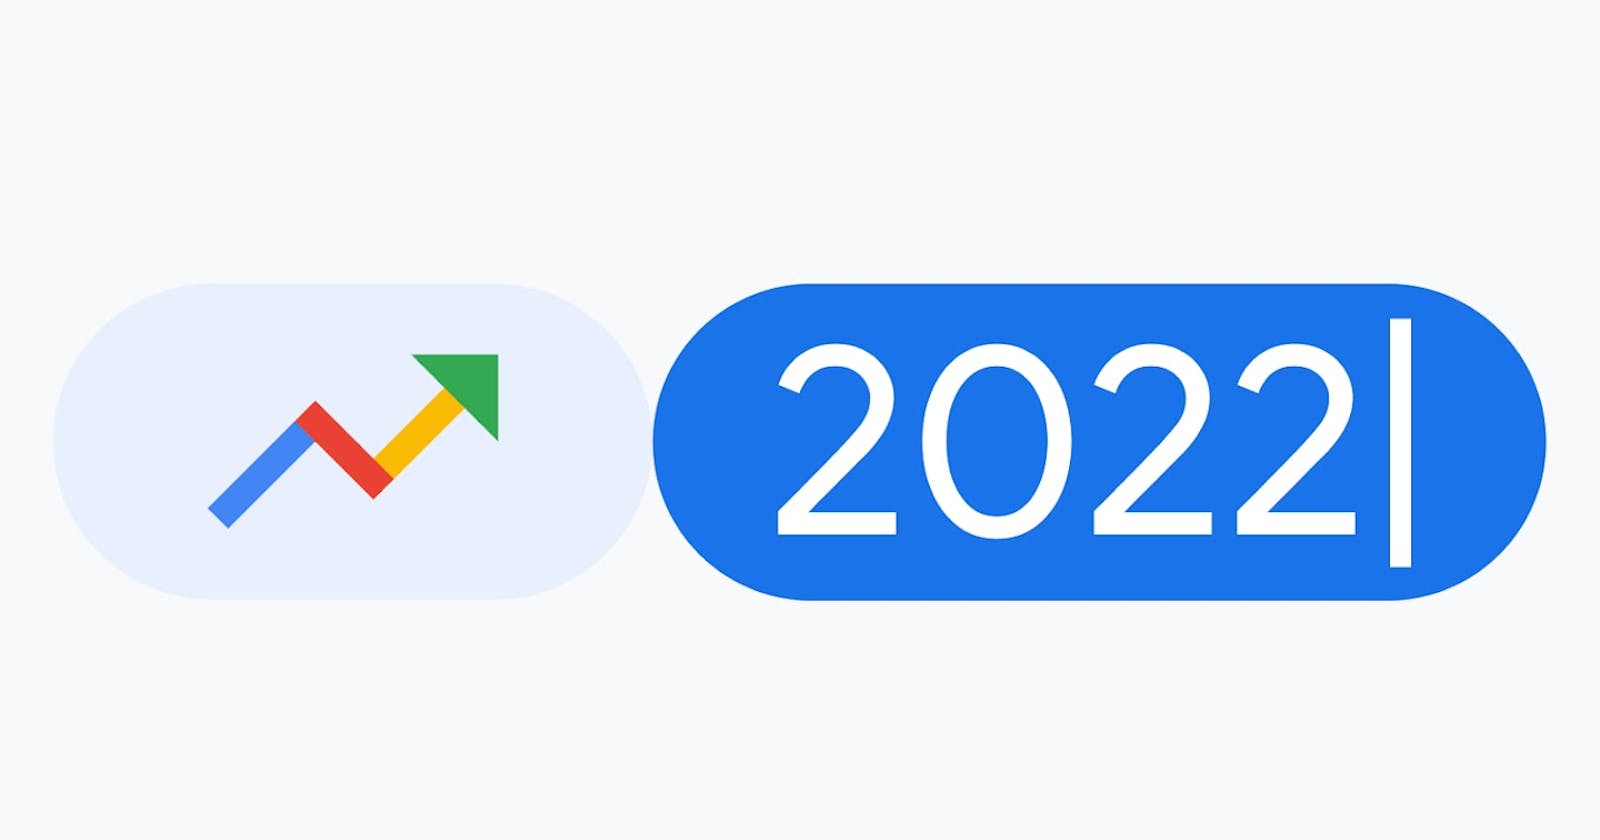 [Google] Xu hướng tìm kiếm nổi bật trong năm 2022 tại Việt Nam